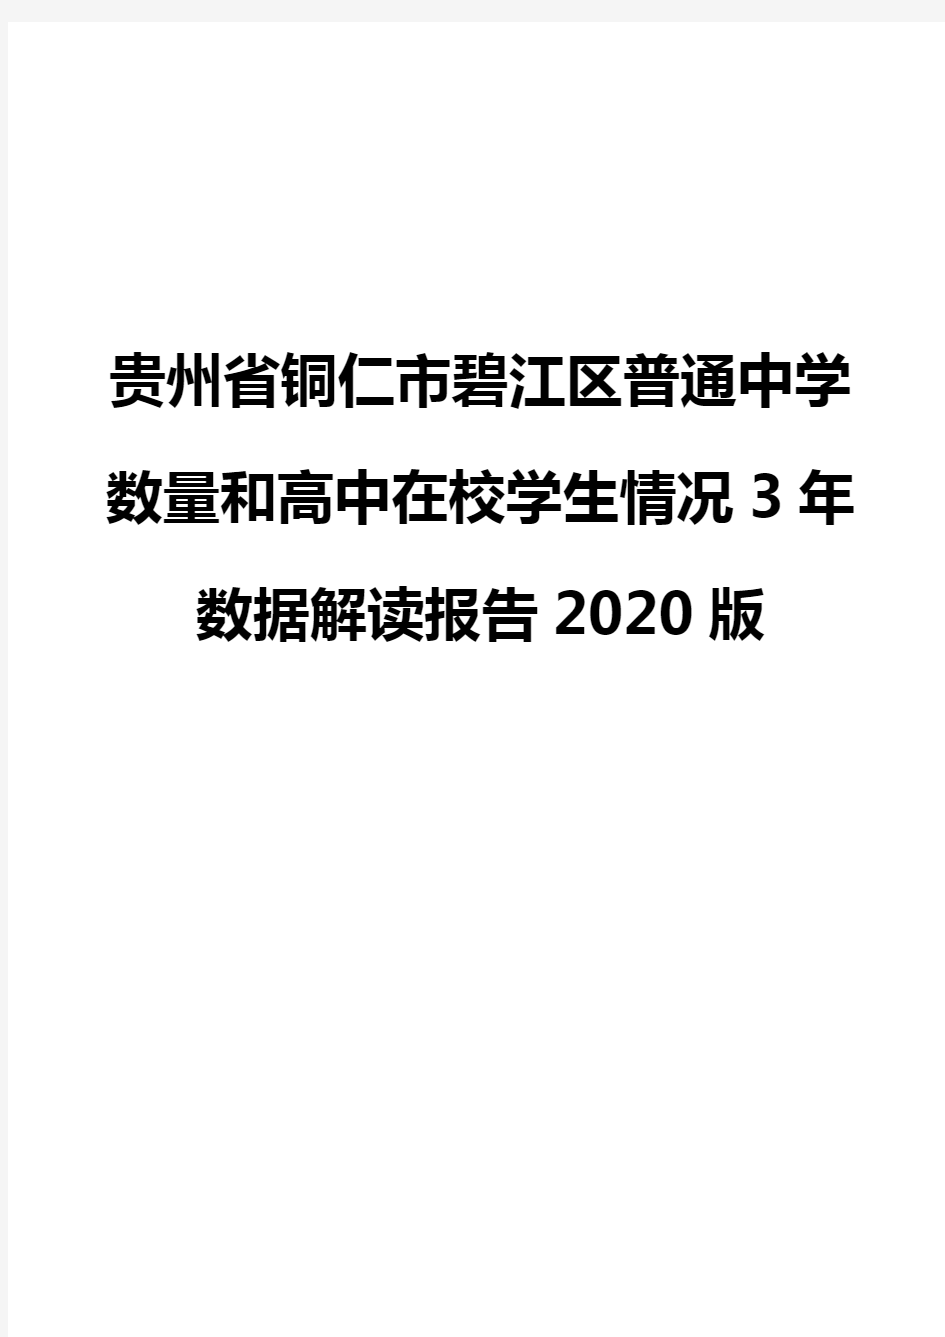 贵州省铜仁市碧江区普通中学数量和高中在校学生情况3年数据解读报告2020版